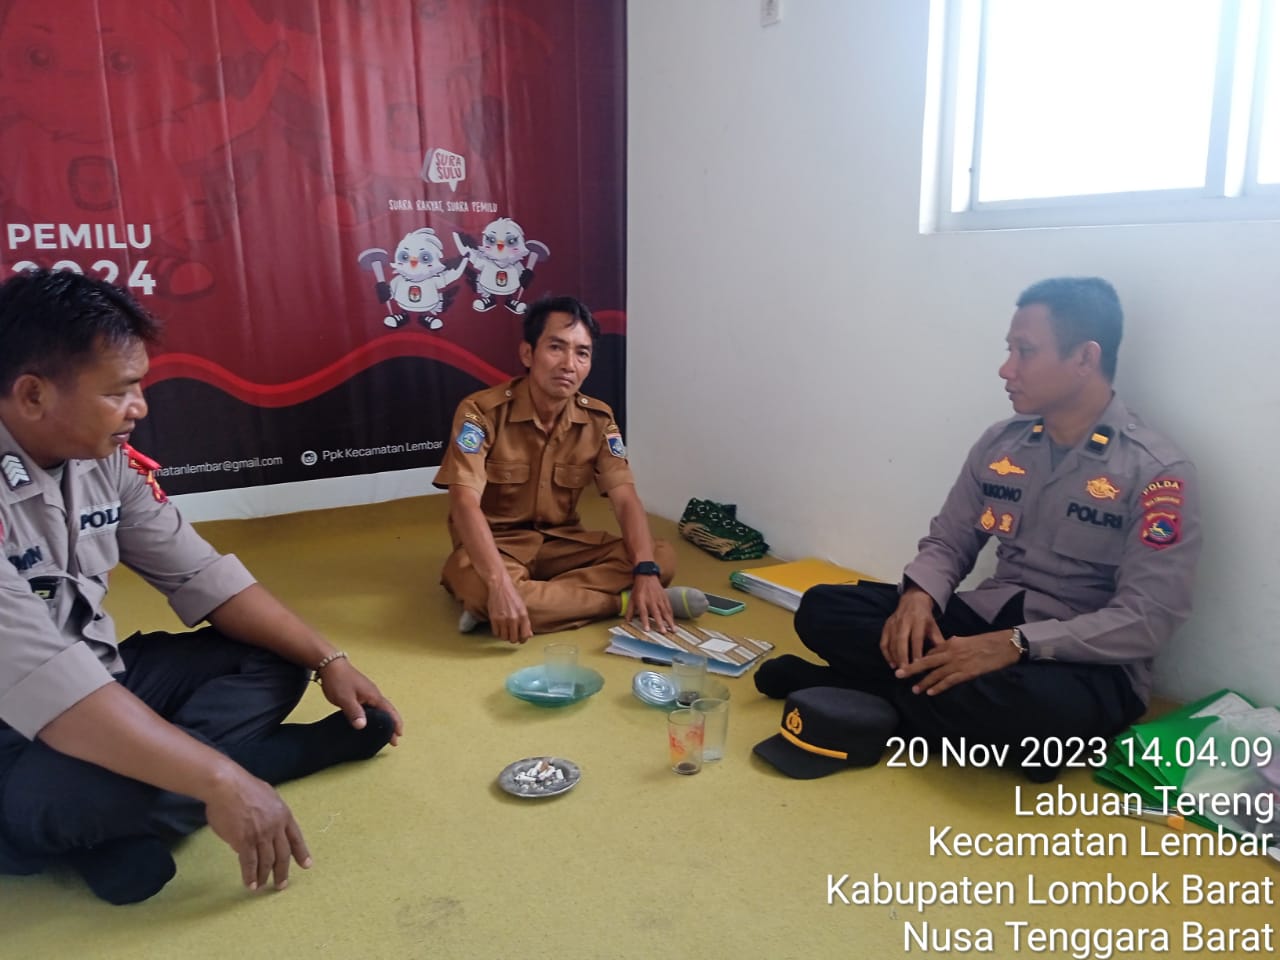 Polres Lombok Barat Lakukan Sosialisasi Pemilu 2024 ke Aparat Desa dan PPK